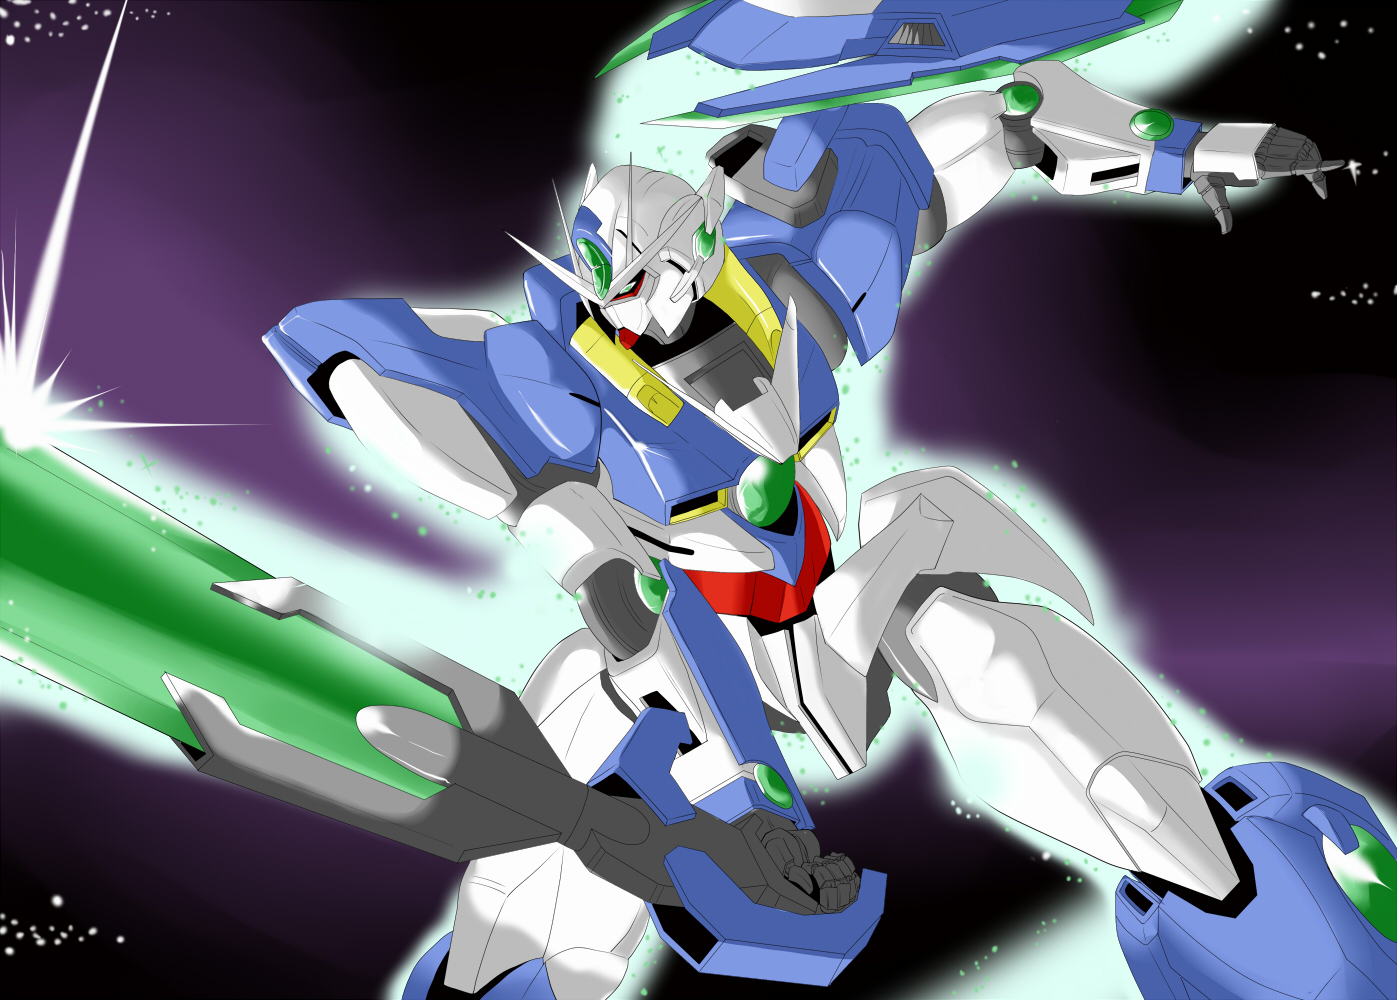 Anime Mechs Super Robot Wars Mobile Suit Gundam 00 00 Qan T Artwork Gundam Digital Art Fan Art Pixiv 1397x1000